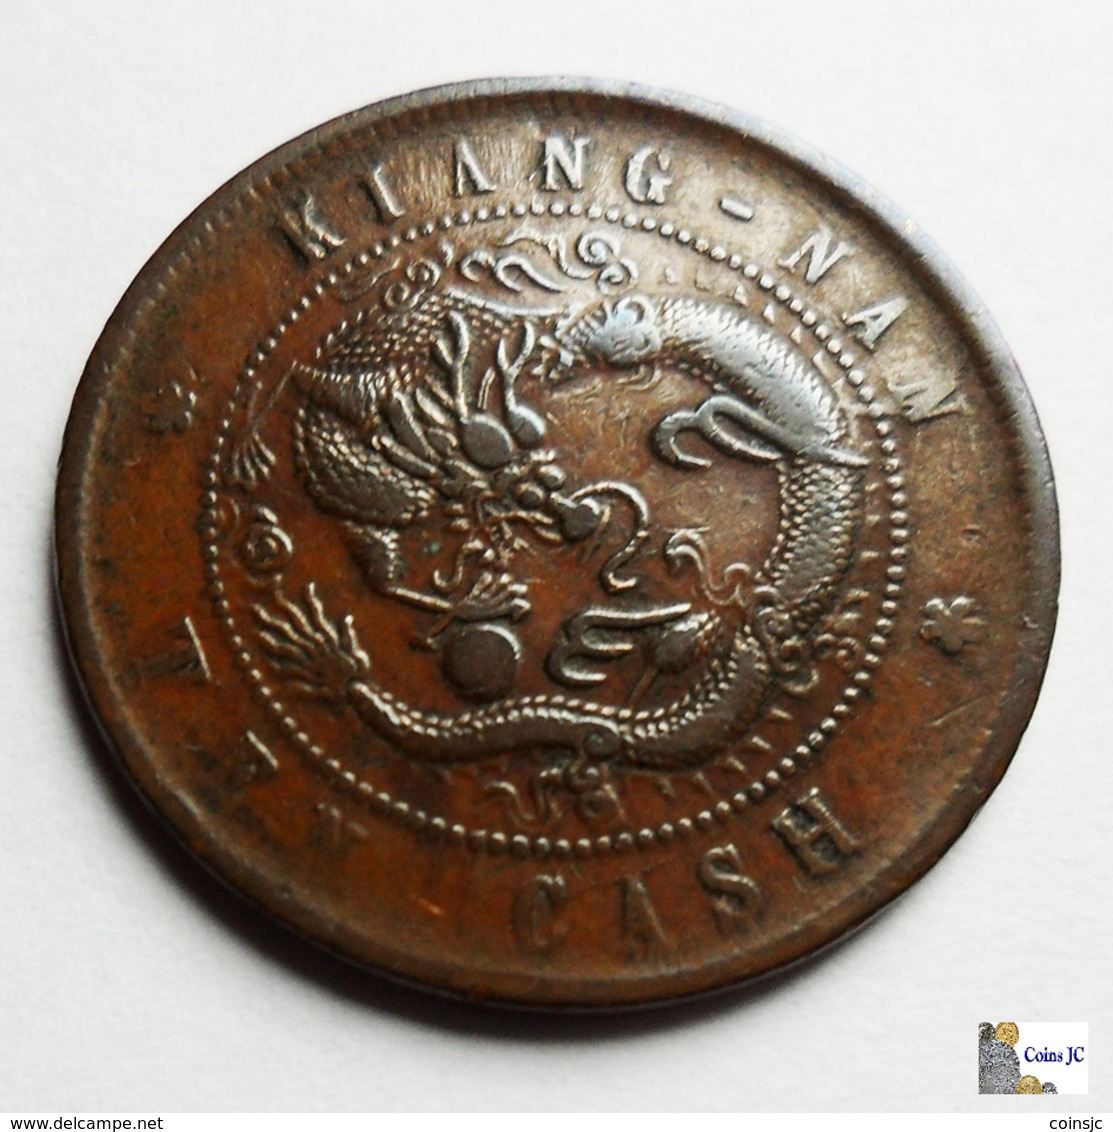 China - Kiangnan - 10 Cash - 1905 - China